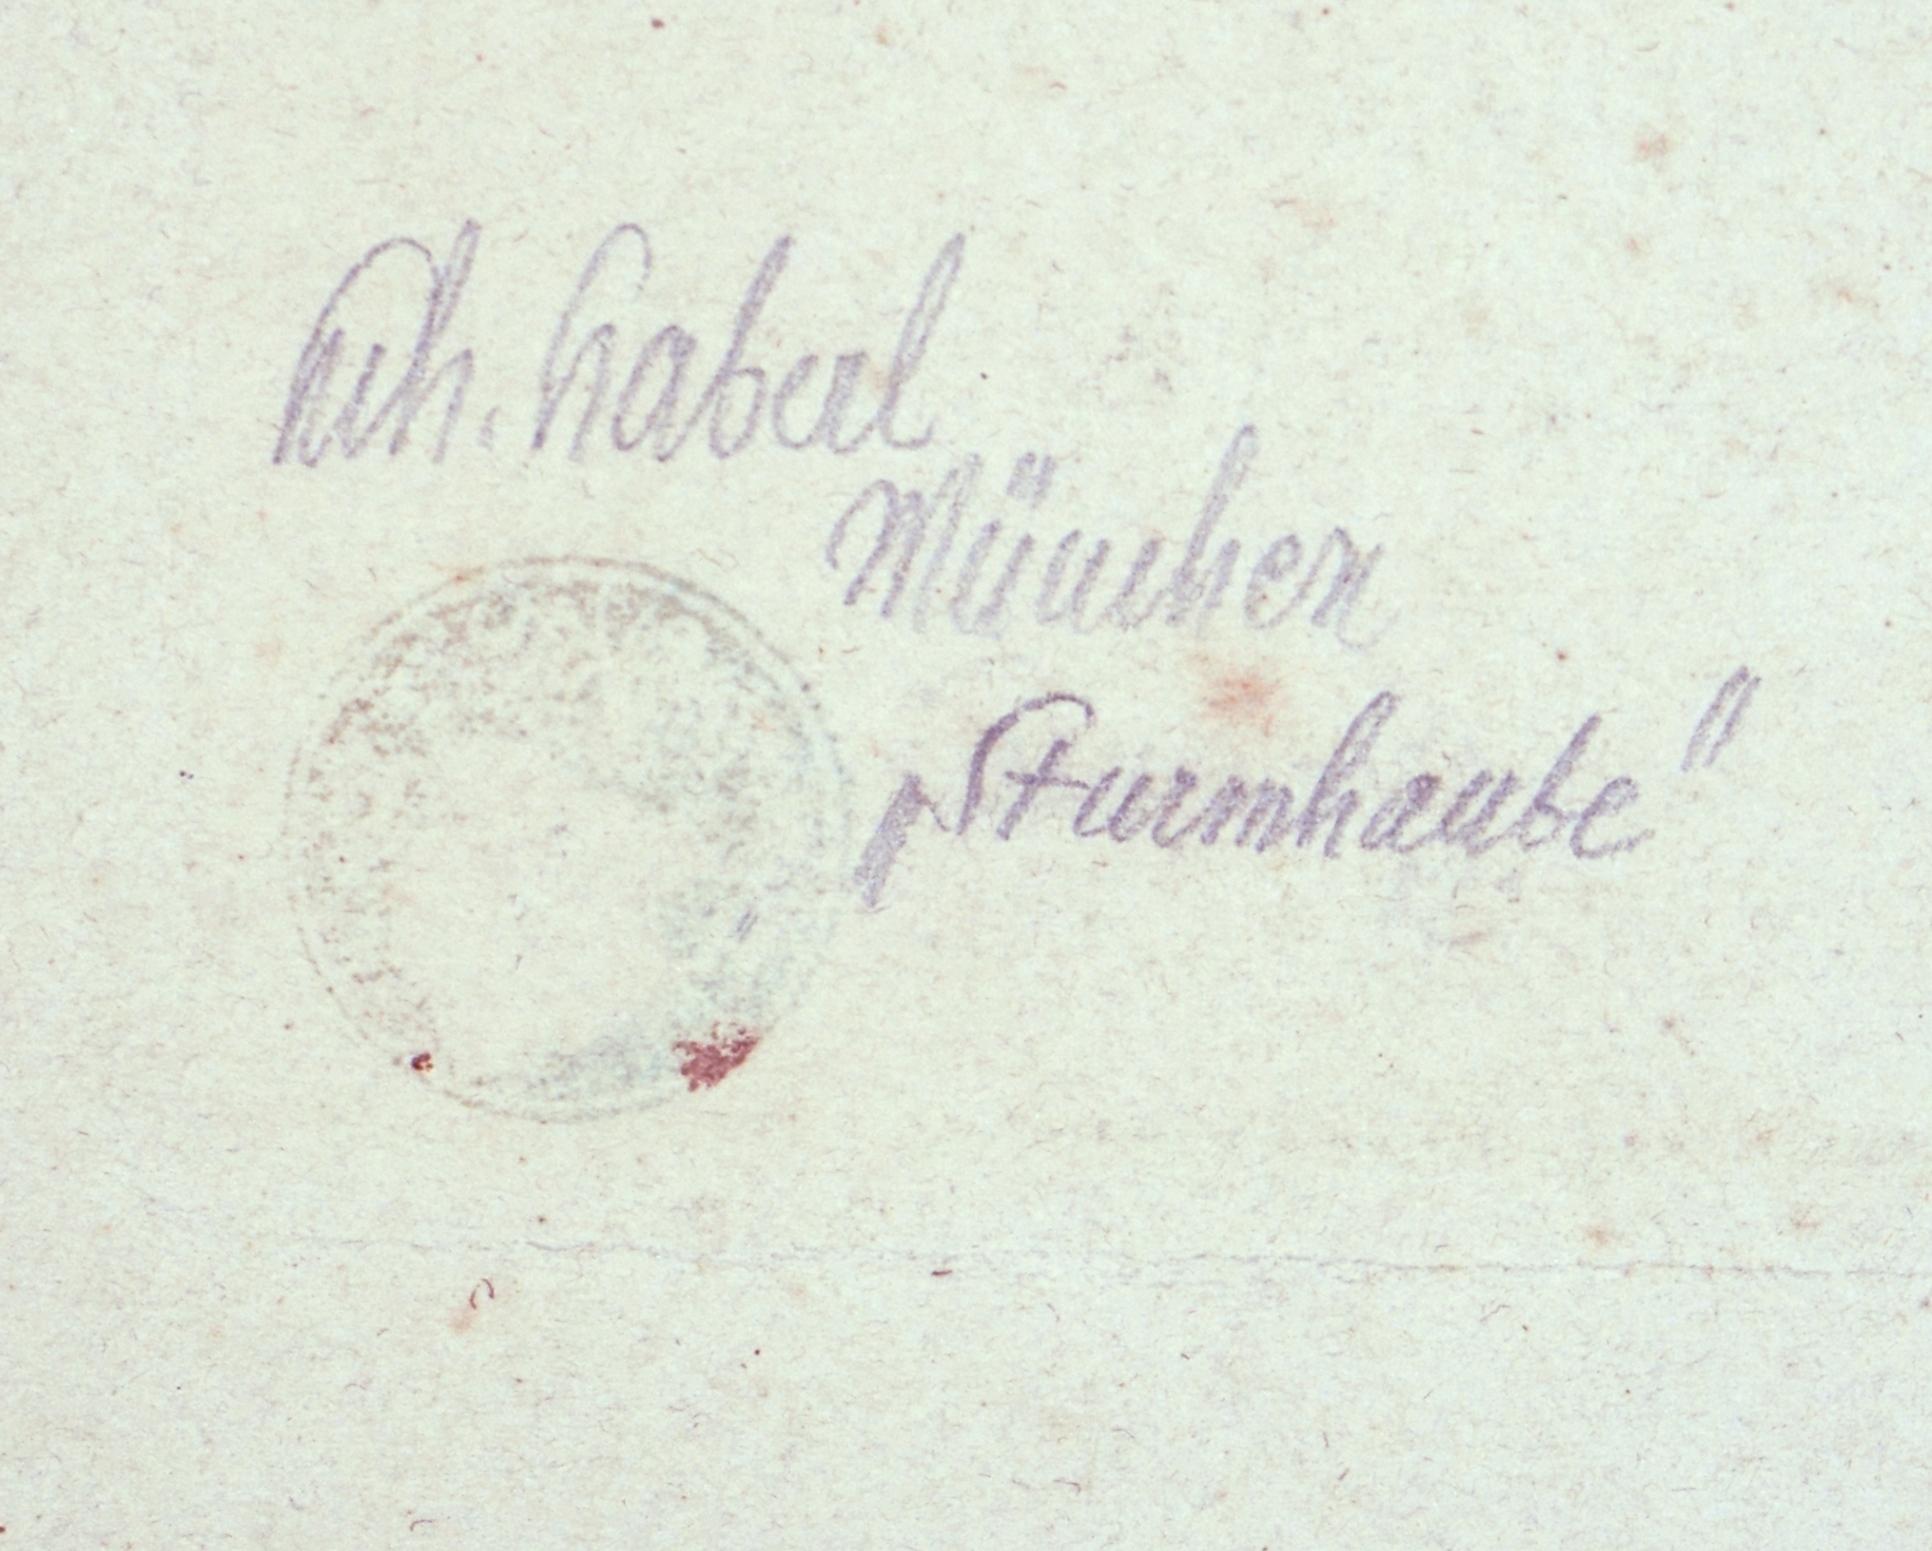 Heinrich Haberl (1869 Passau - 1934 Munich), Sturmhaube, vers 1900. pointe sèche, 14 x 10 cm (marque au trait), 28 x 21 cm (format de la feuille), 39 x 29 cm (passe-partout), titrée 